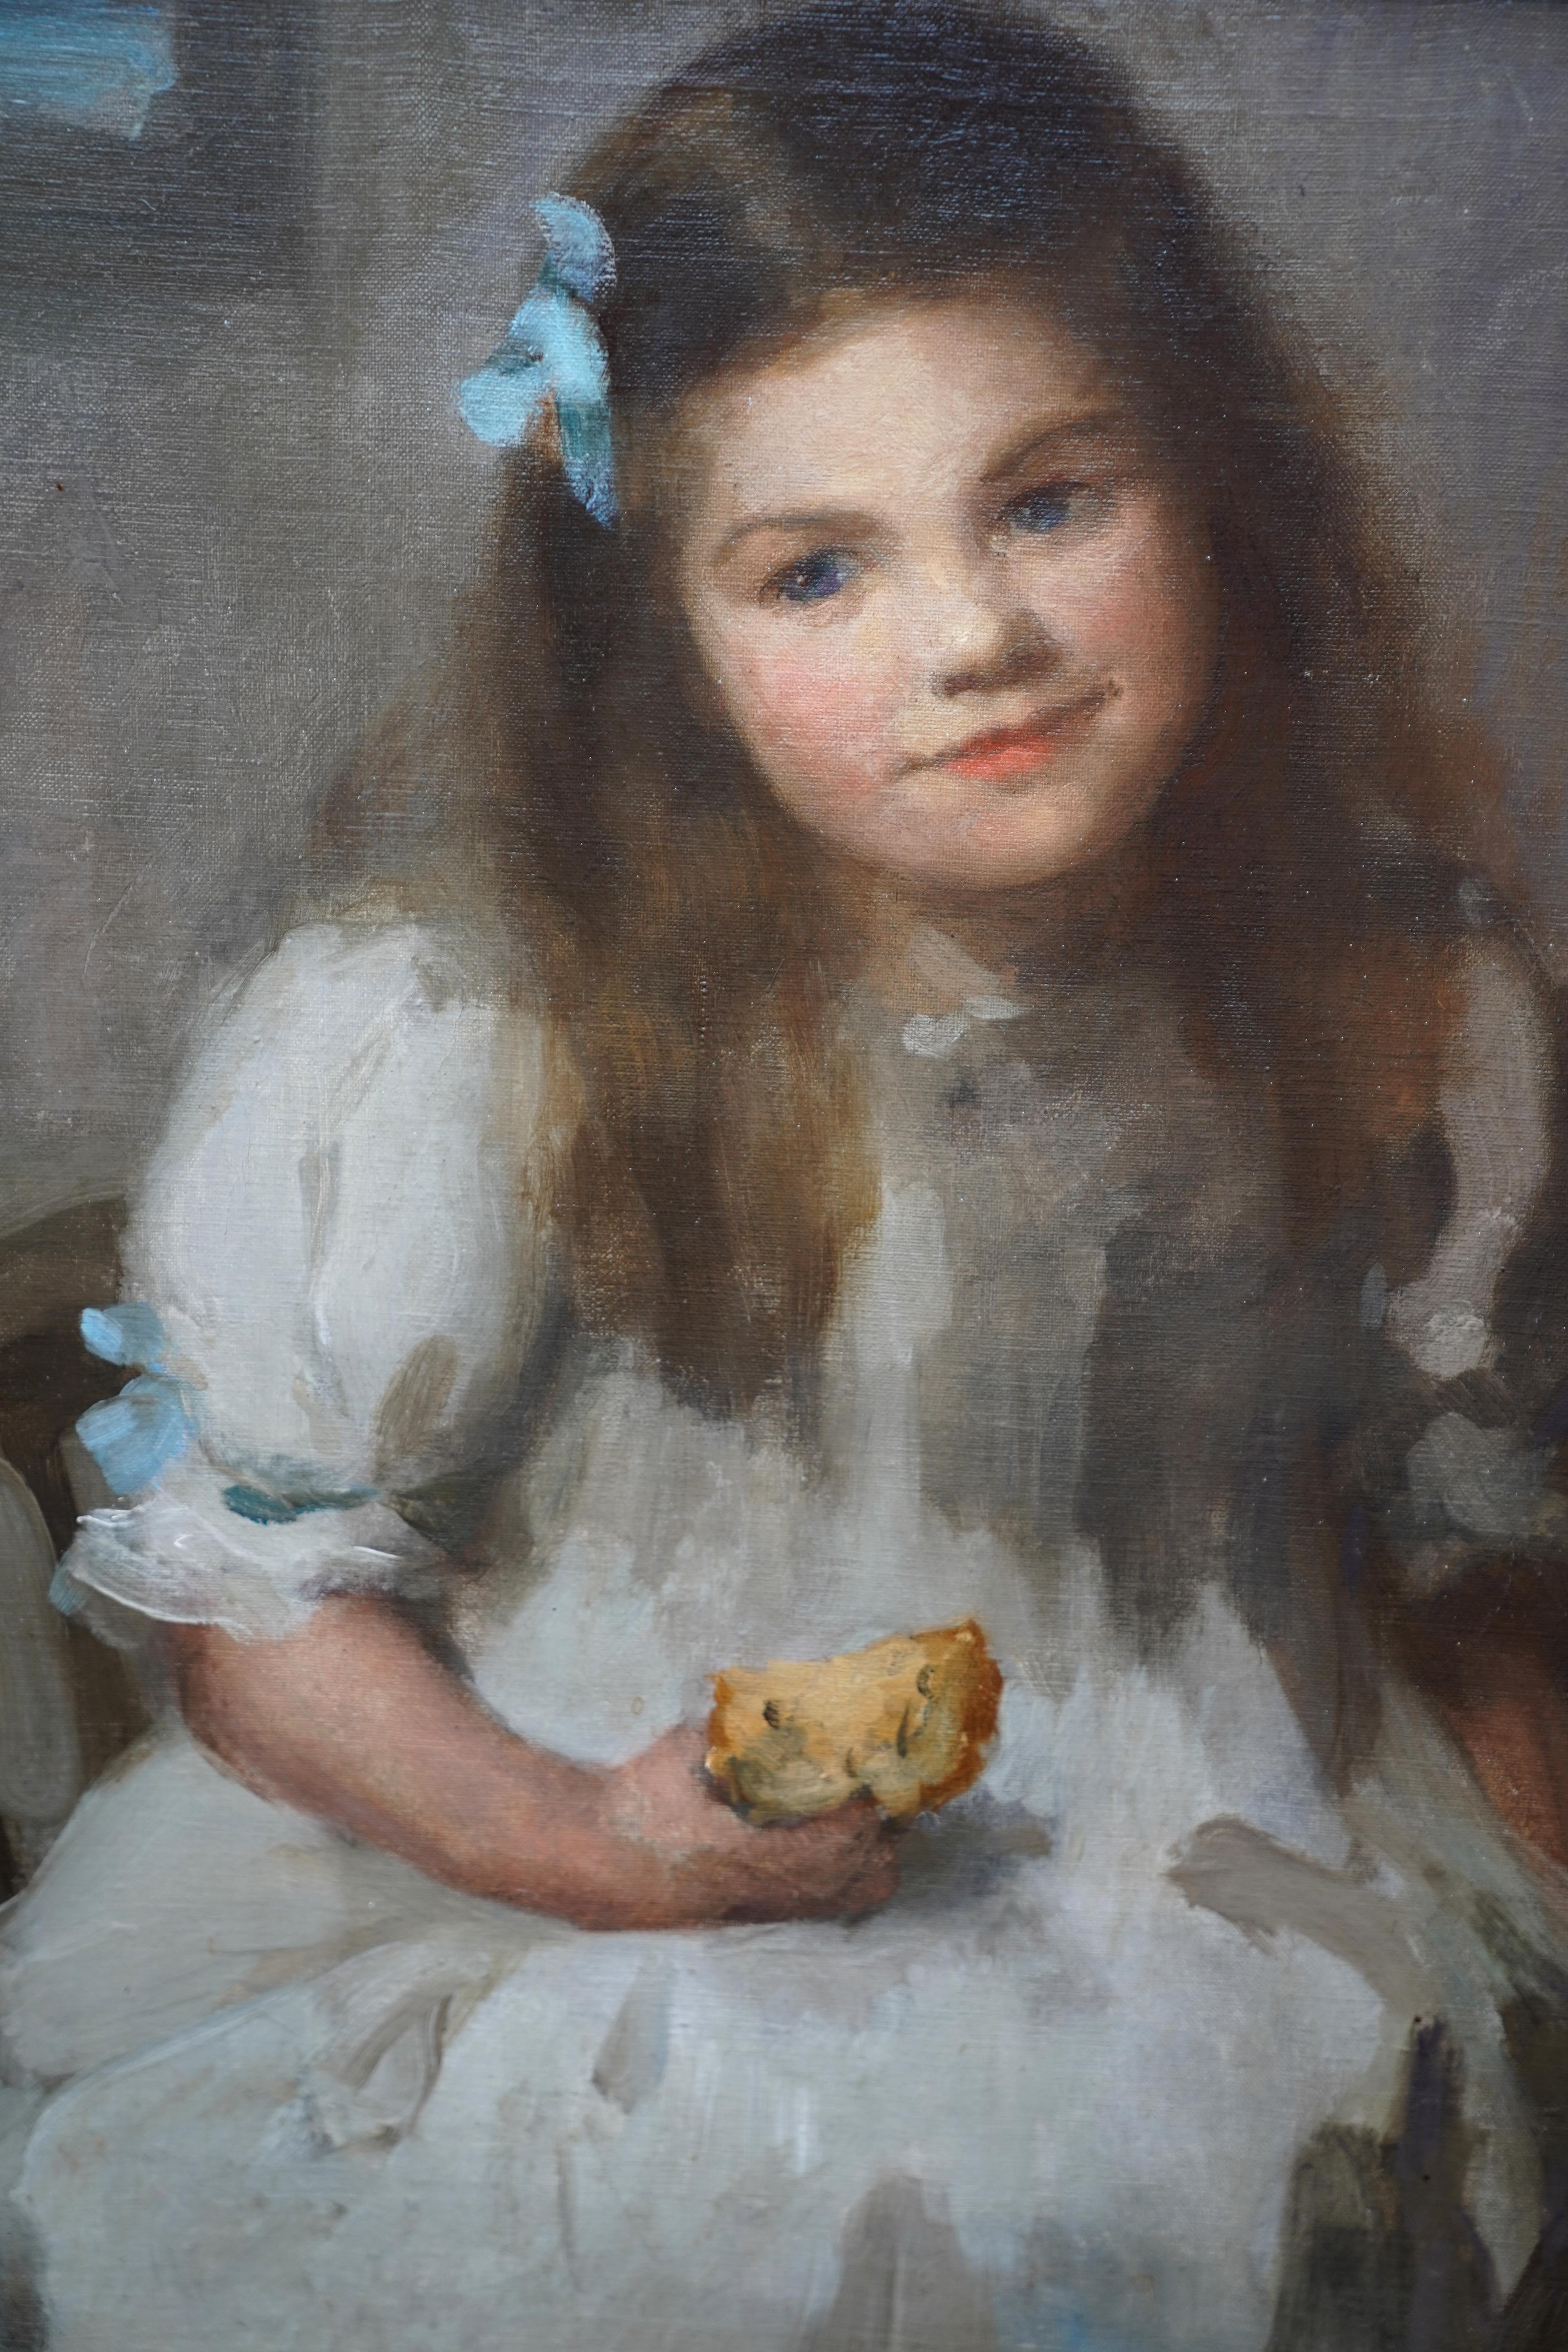 Ce charmant portrait à l'huile impressionniste britannique de l'époque édouardienne est l'œuvre de l'artiste féminine Sybil Maude. Peint vers 1905, ce tableau est un charmant portrait assis d'une jeune fille de Cornouailles tenant une brioche au